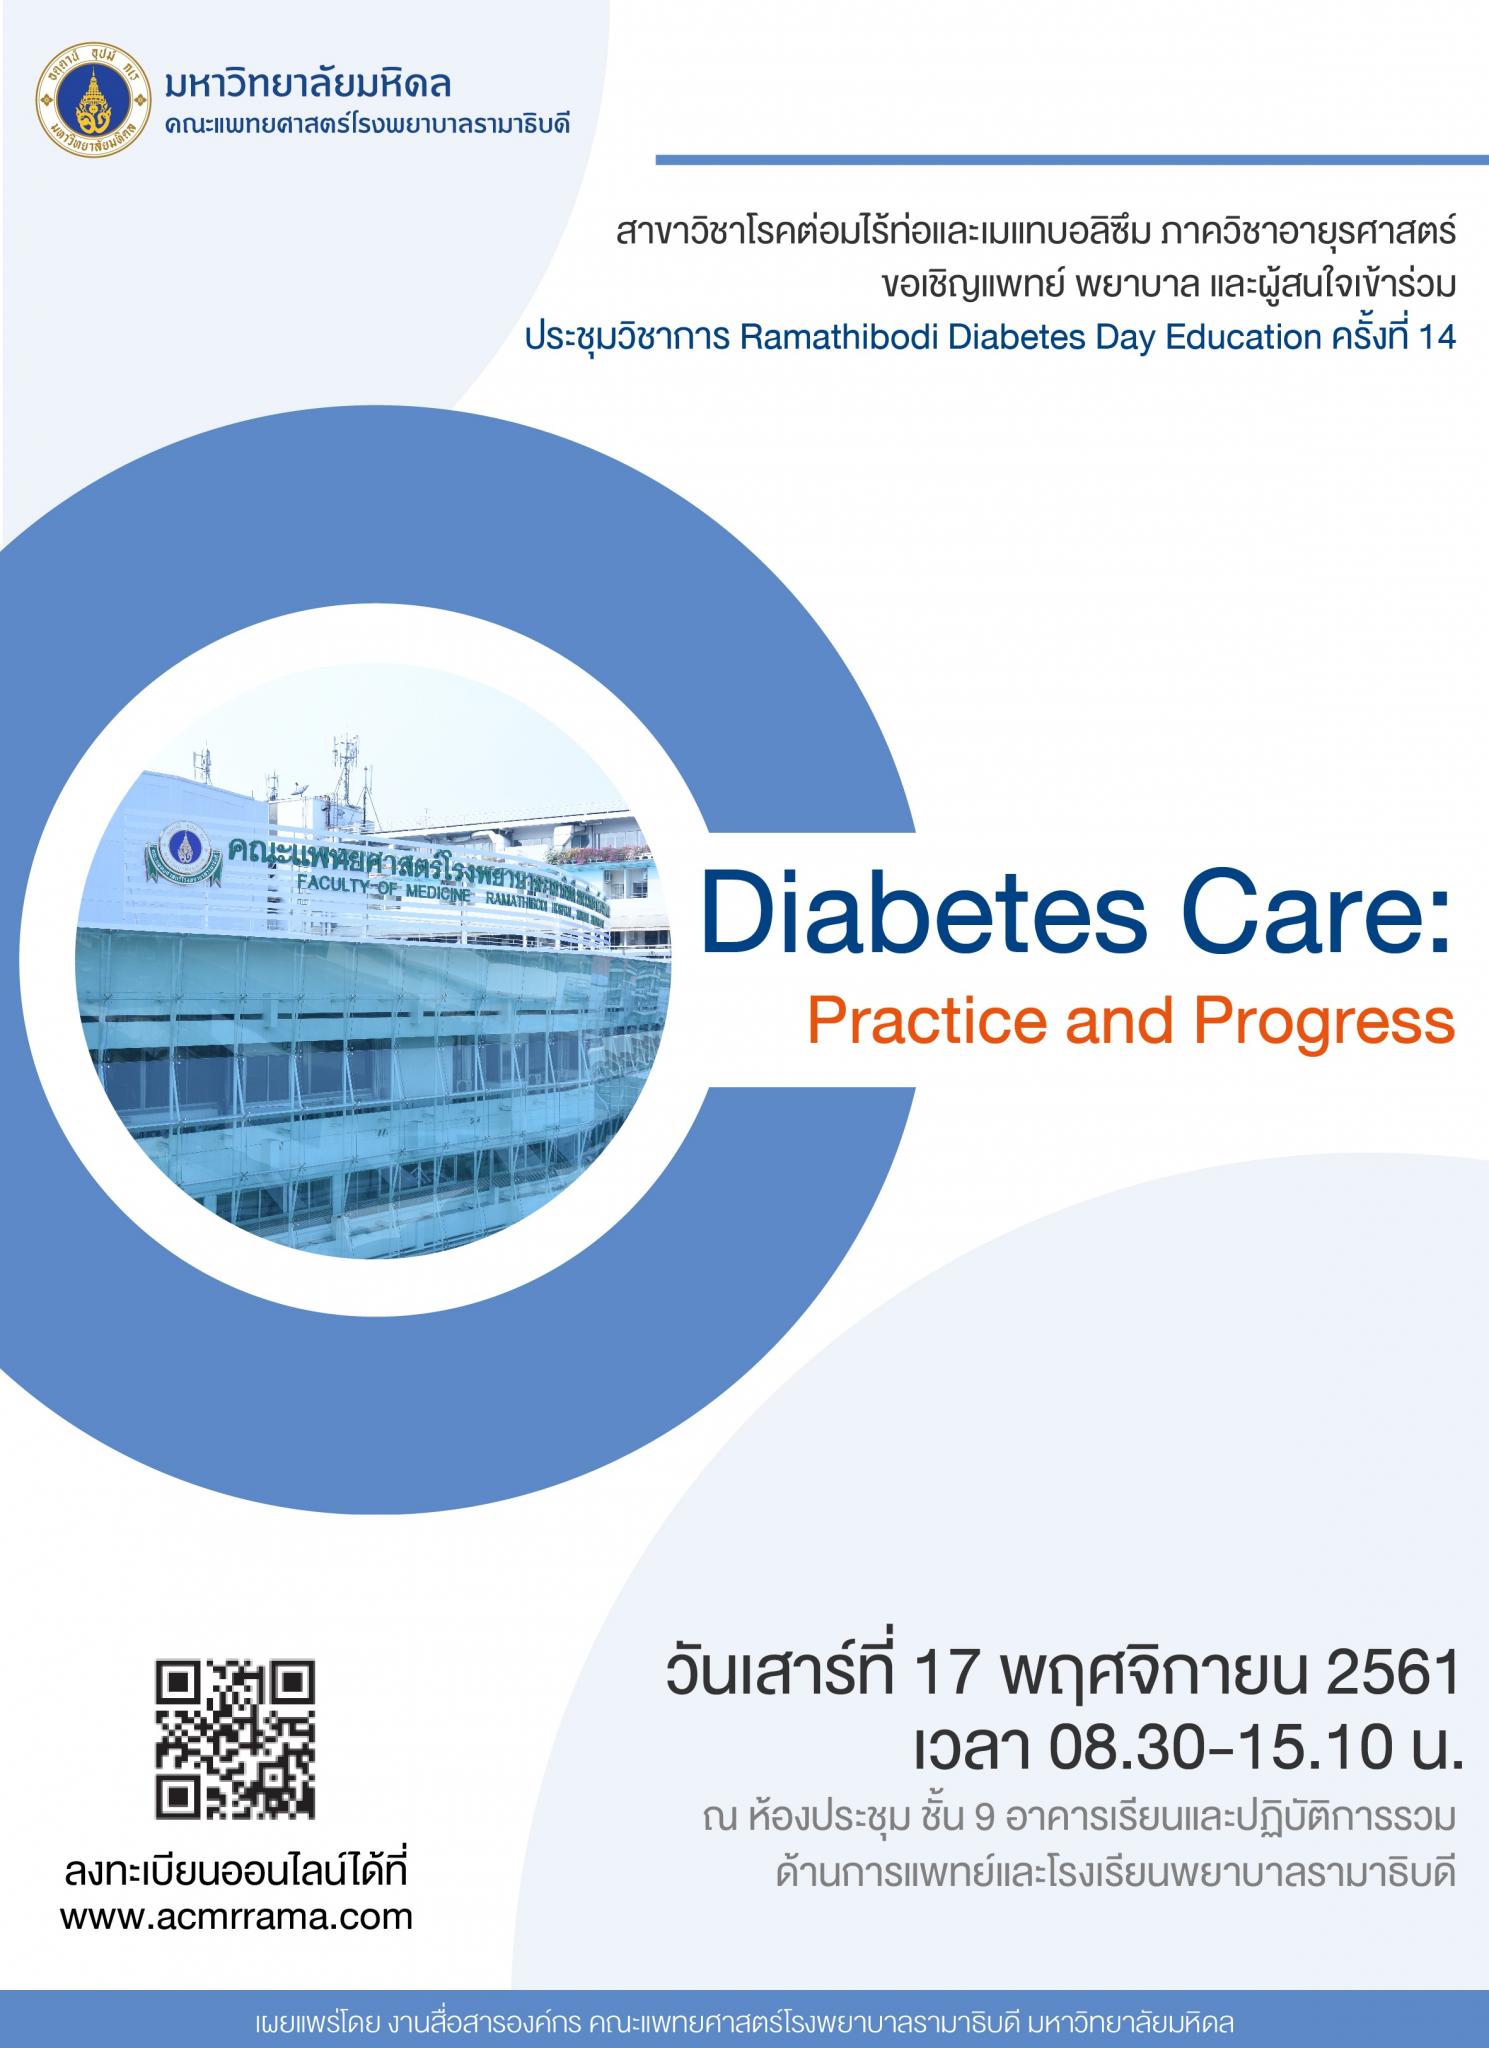 ประชุมวิชาการ Ramathibodi Diabetes Day Education ครั้งที่ 14 เรื่อง “Diabetes Care: Practice and Progress”